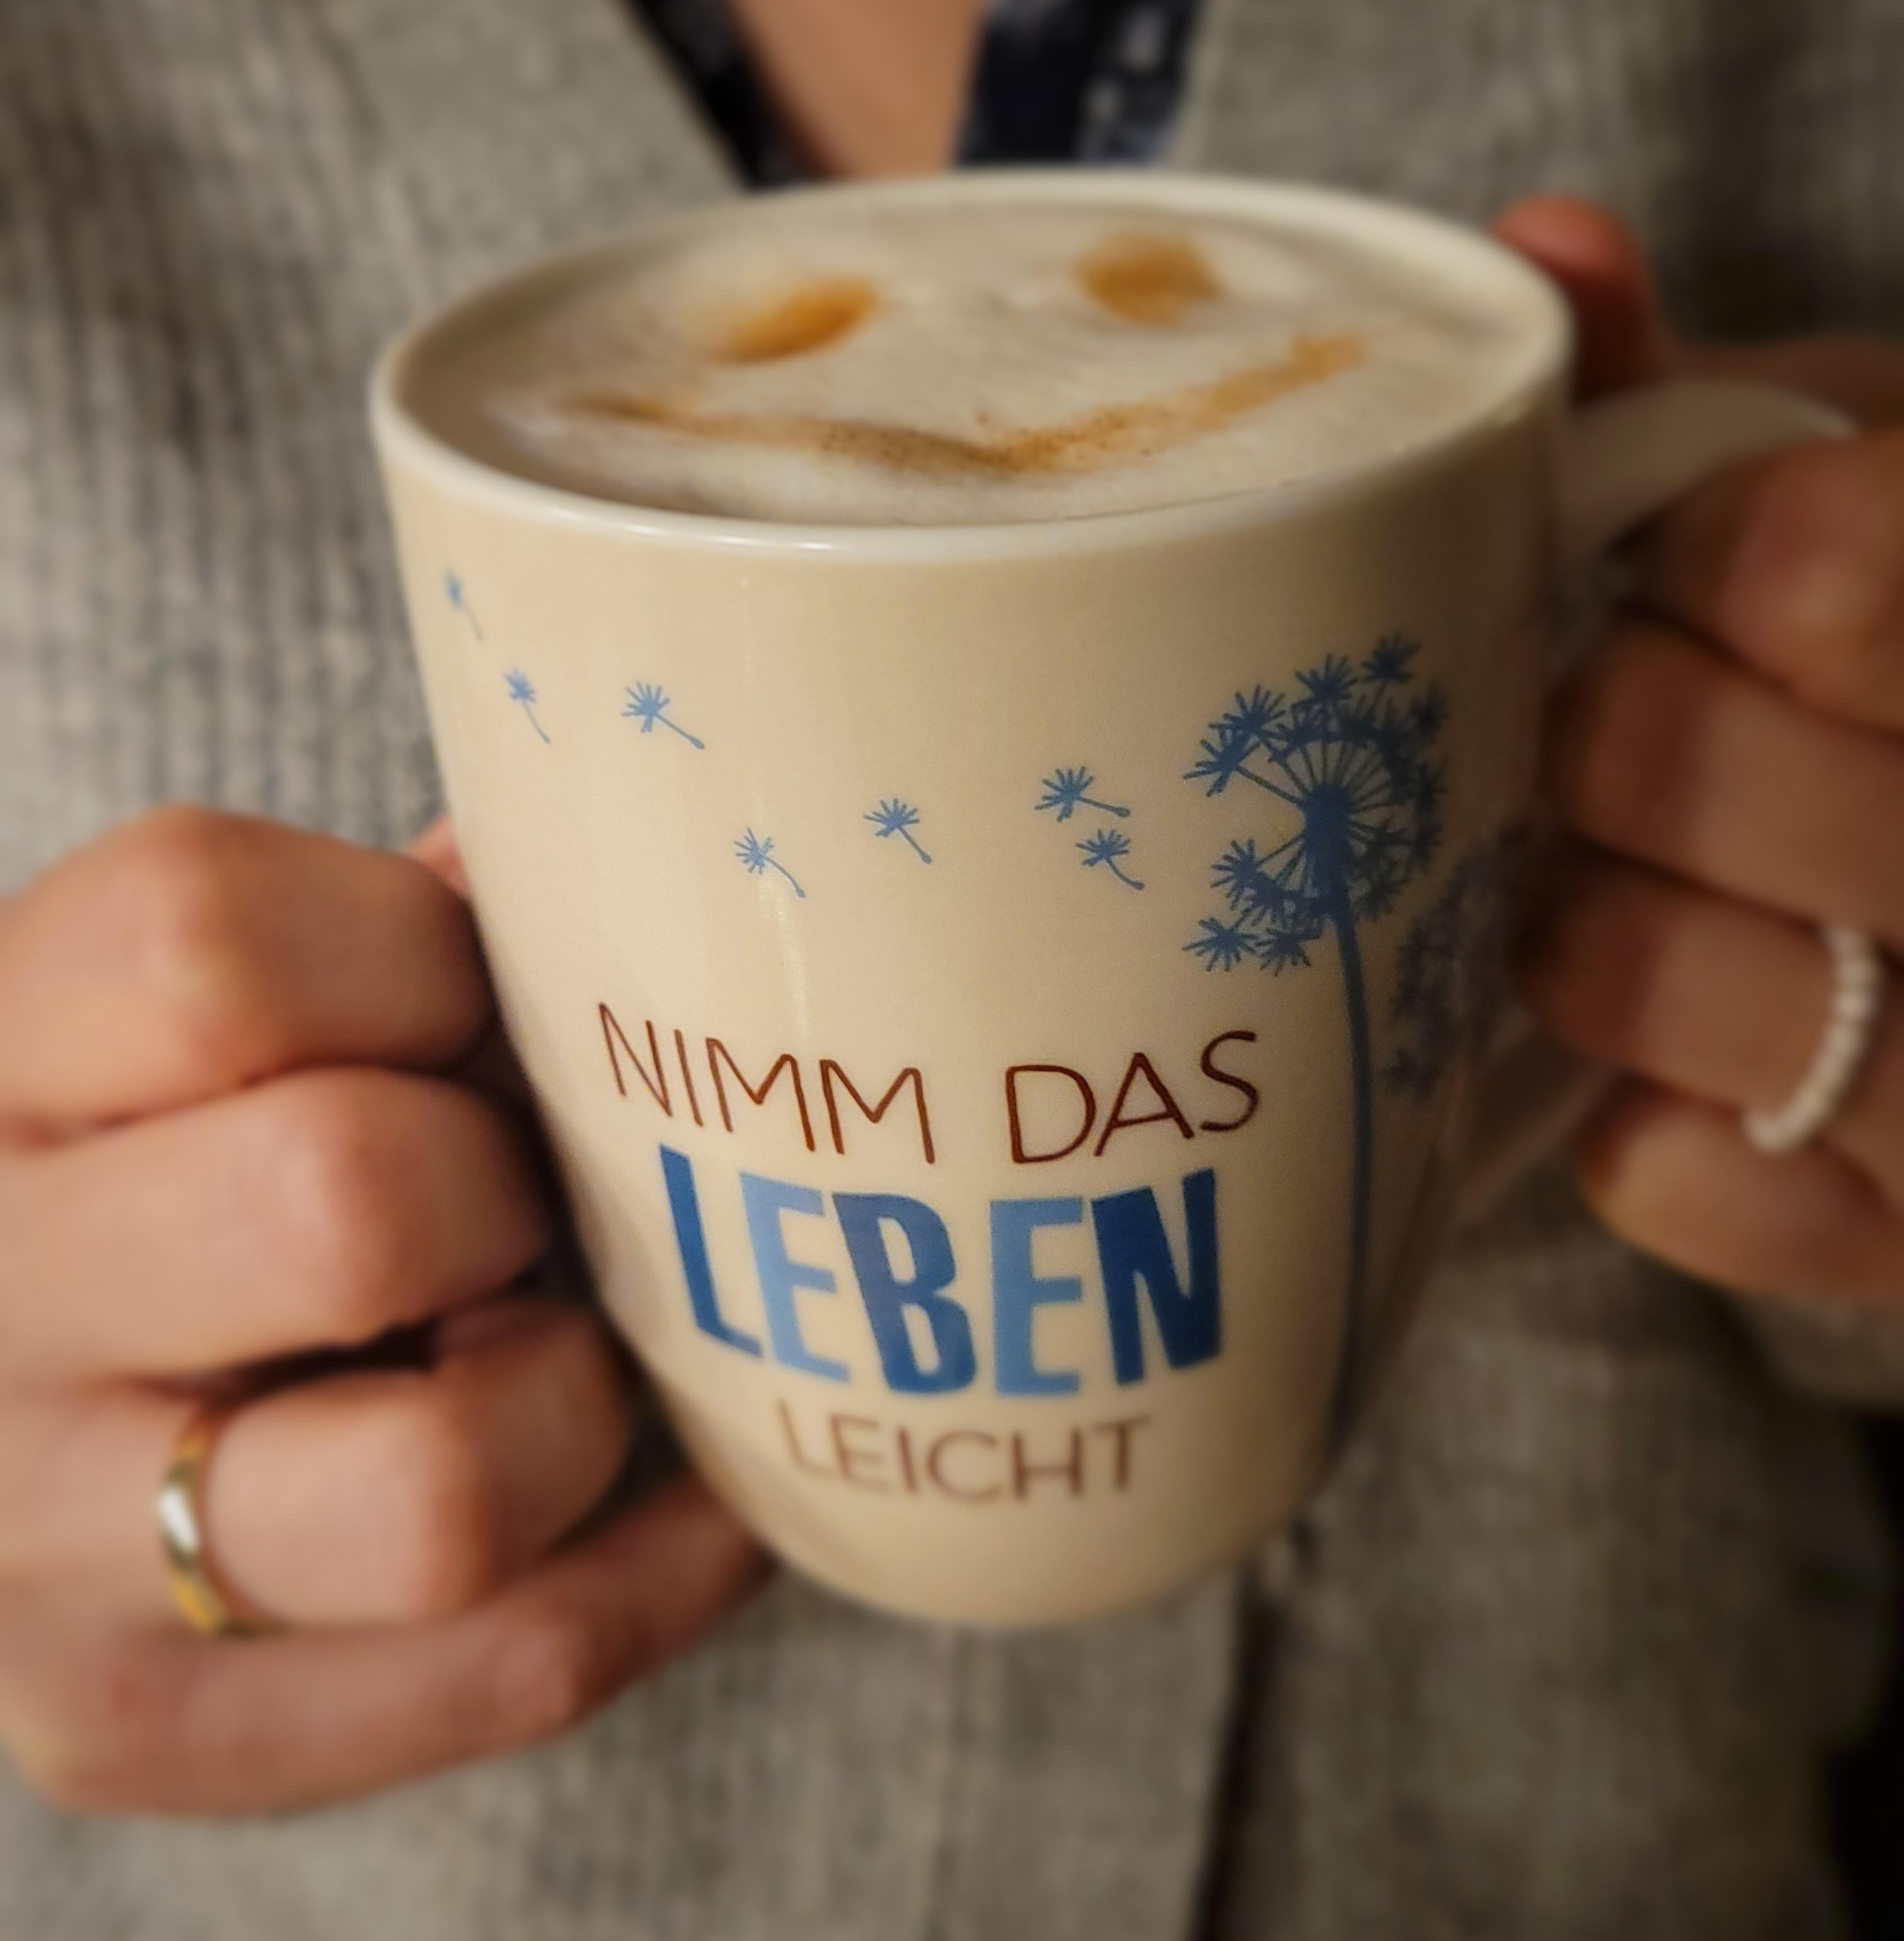 Endlich Feierabend! :-)

#coffeelover #feierabend #gemütlich #hygge